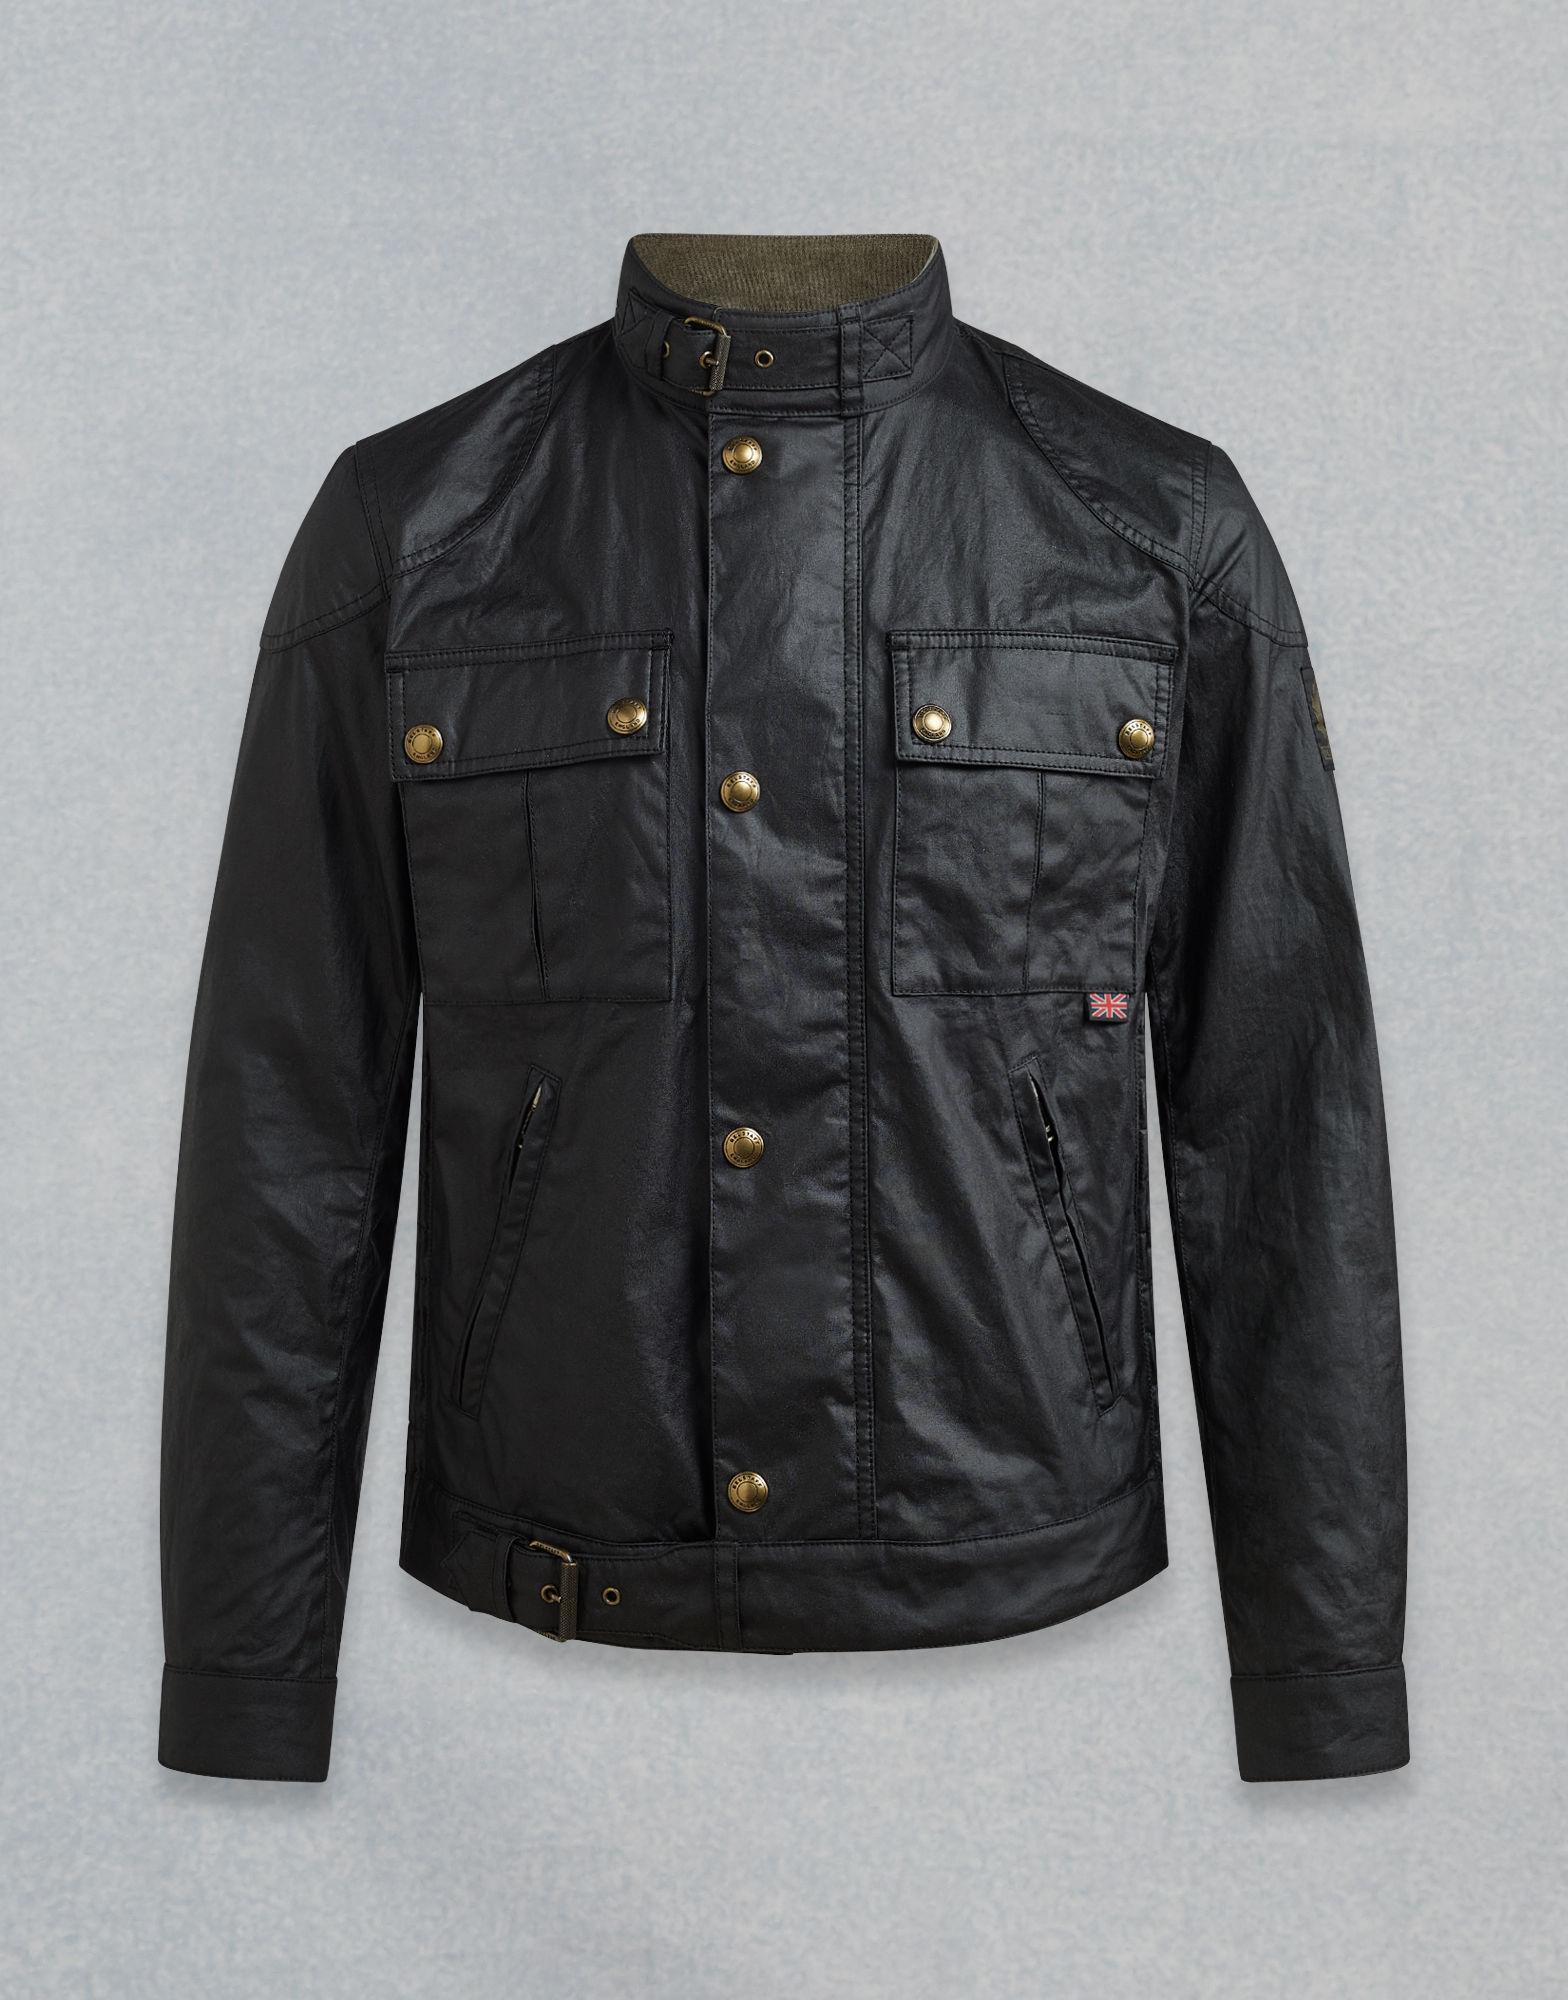 Belstaff Cotton Gangster Waxed Jacket in Black for Men - Lyst